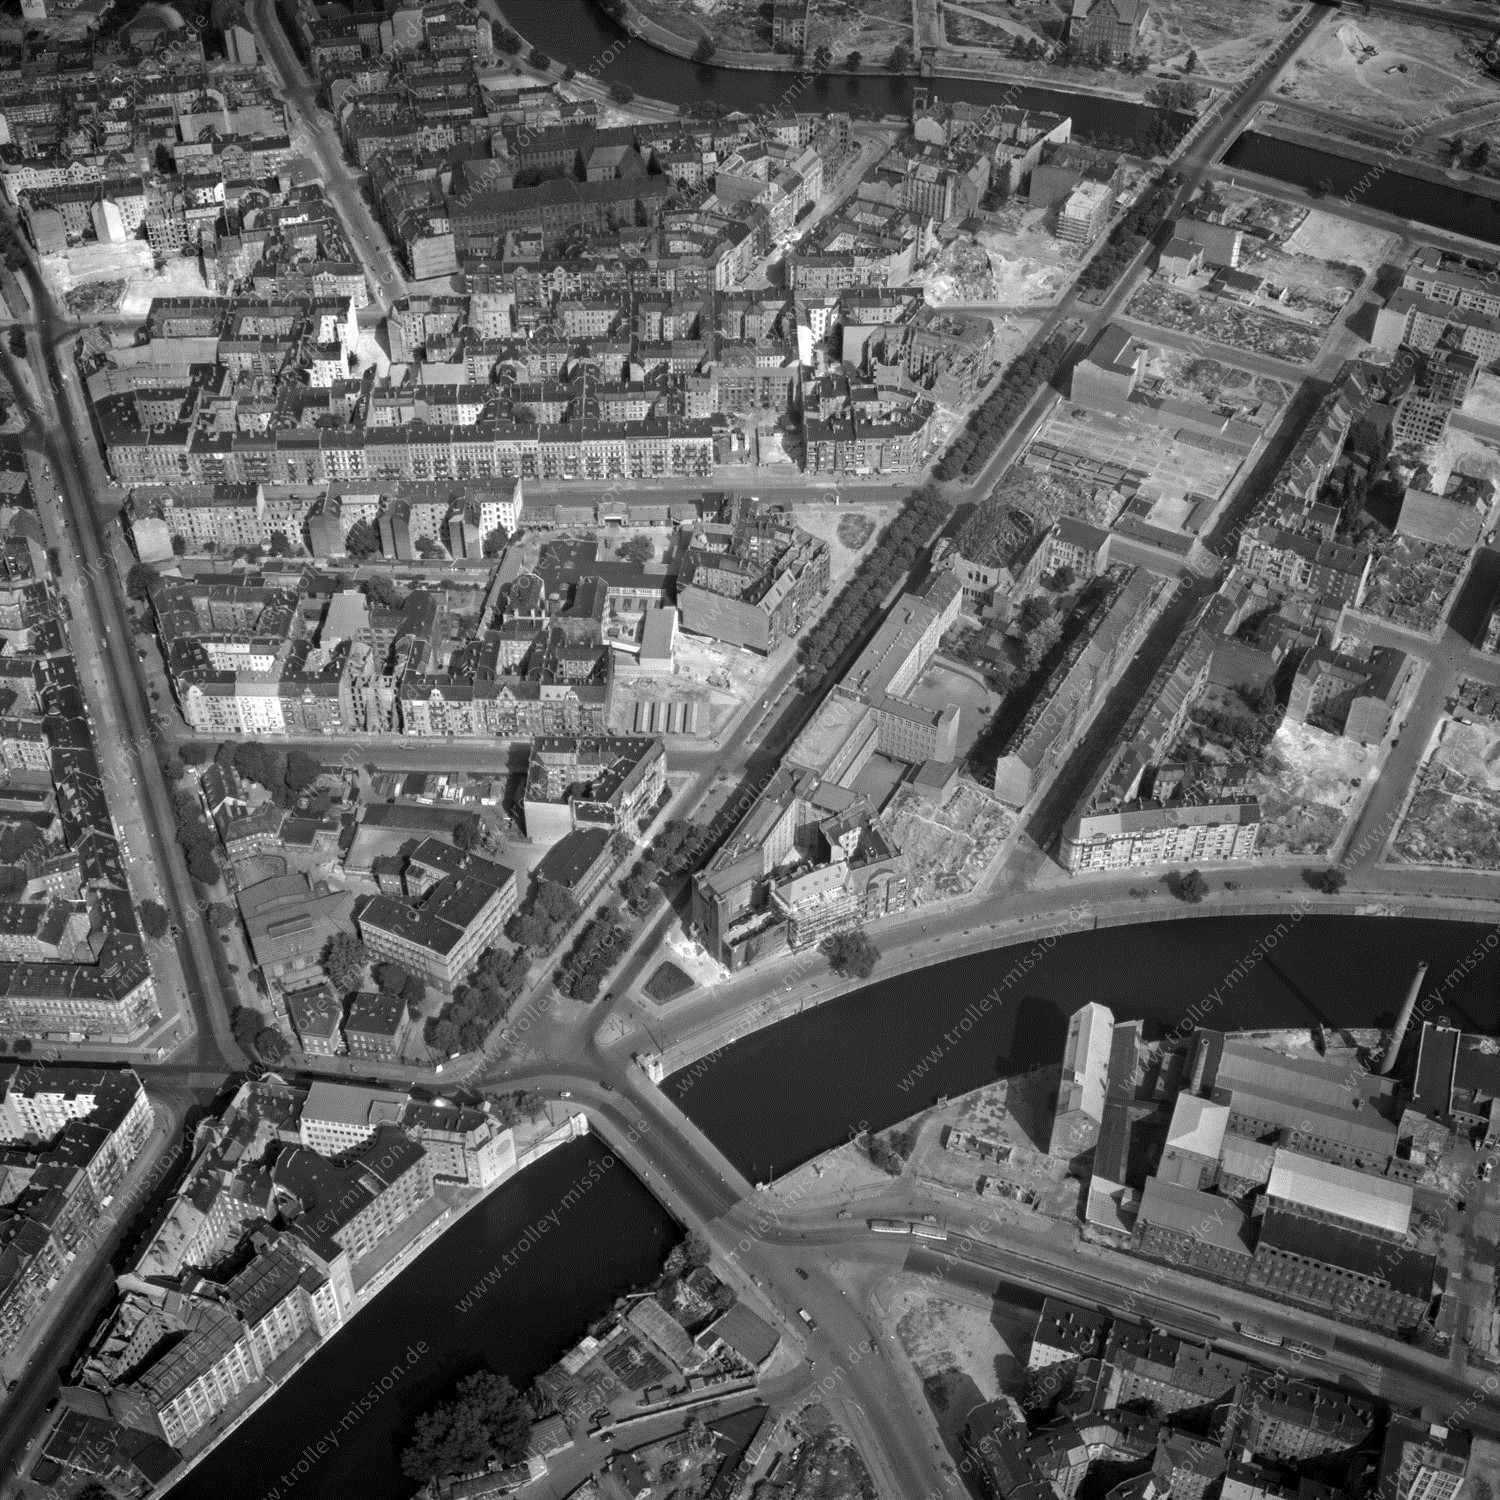 Alte Fotos und Luftbilder von Berlin - Luftbildaufnahme Nr. 07 - Historische Luftaufnahmen von West-Berlin aus dem Jahr 1954 - Flugstrecke Uniform